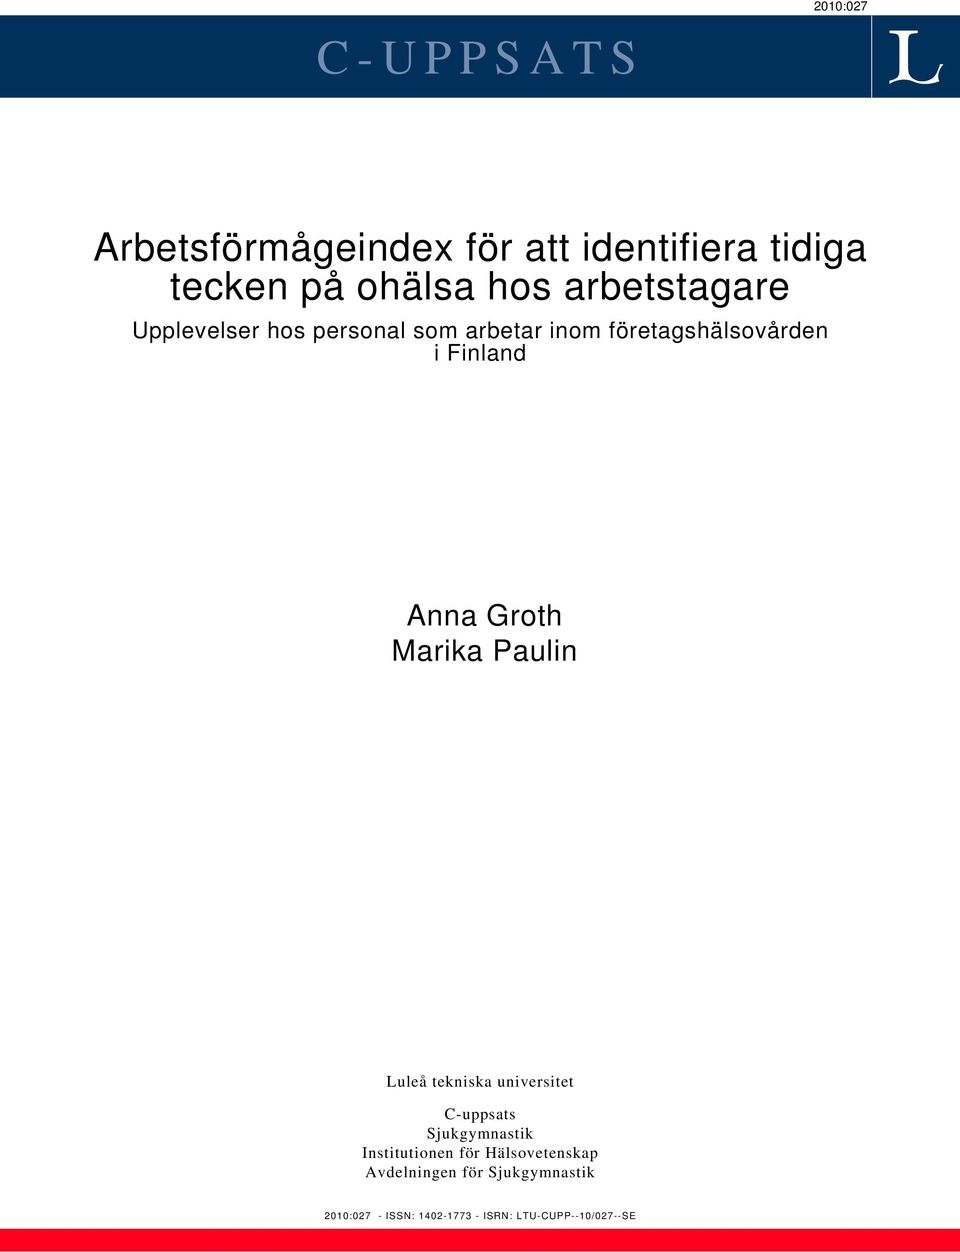 Groth Marika Paulin Luleå tekniska universitet C-uppsats Sjukgymnastik Institutionen för